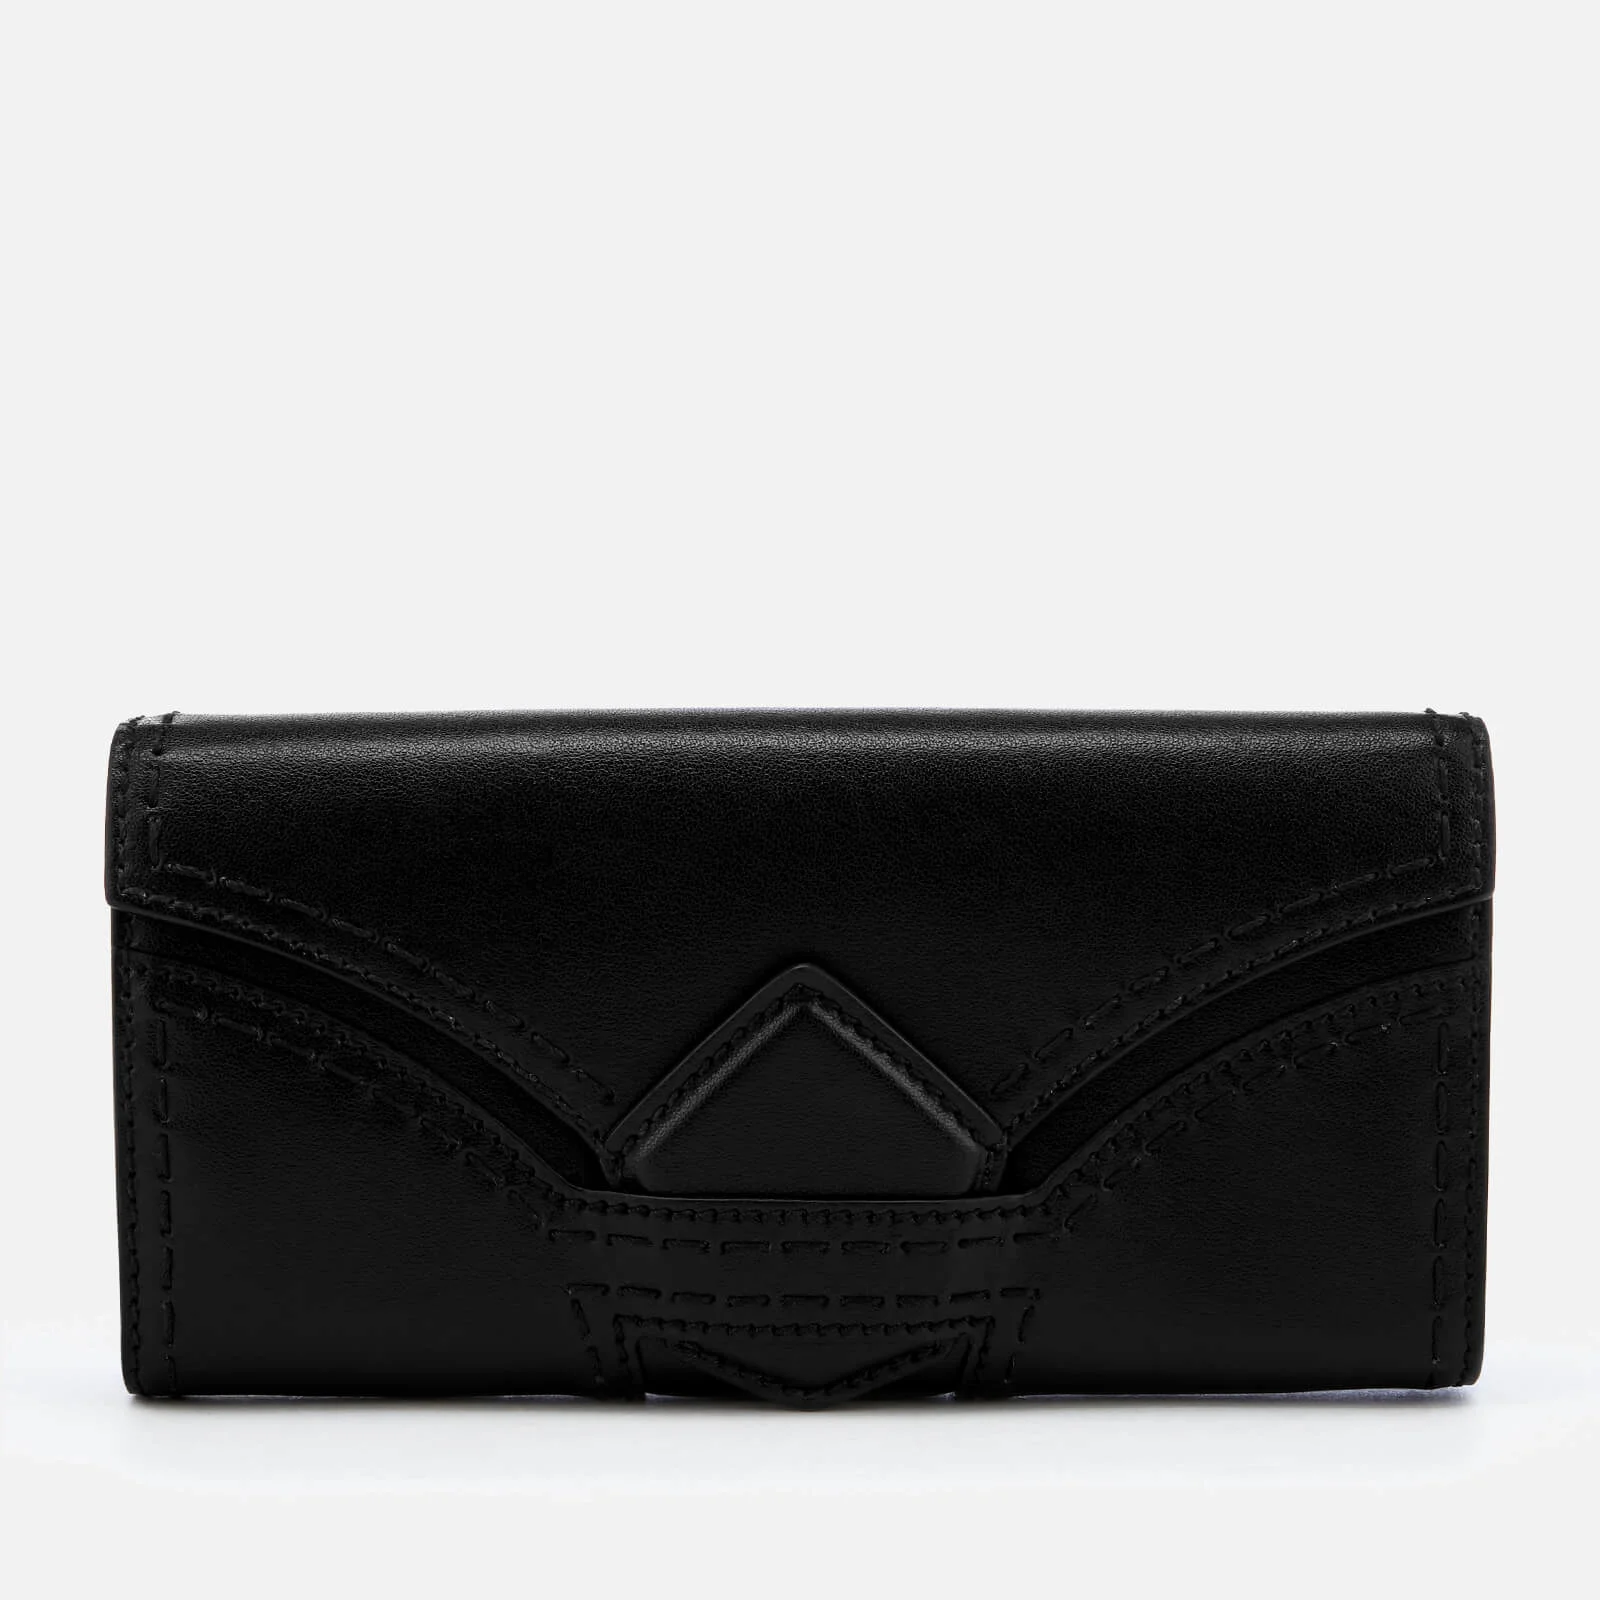 Vivienne Westwood Women's Rosie Diamond Long Wallet - Black Image 1